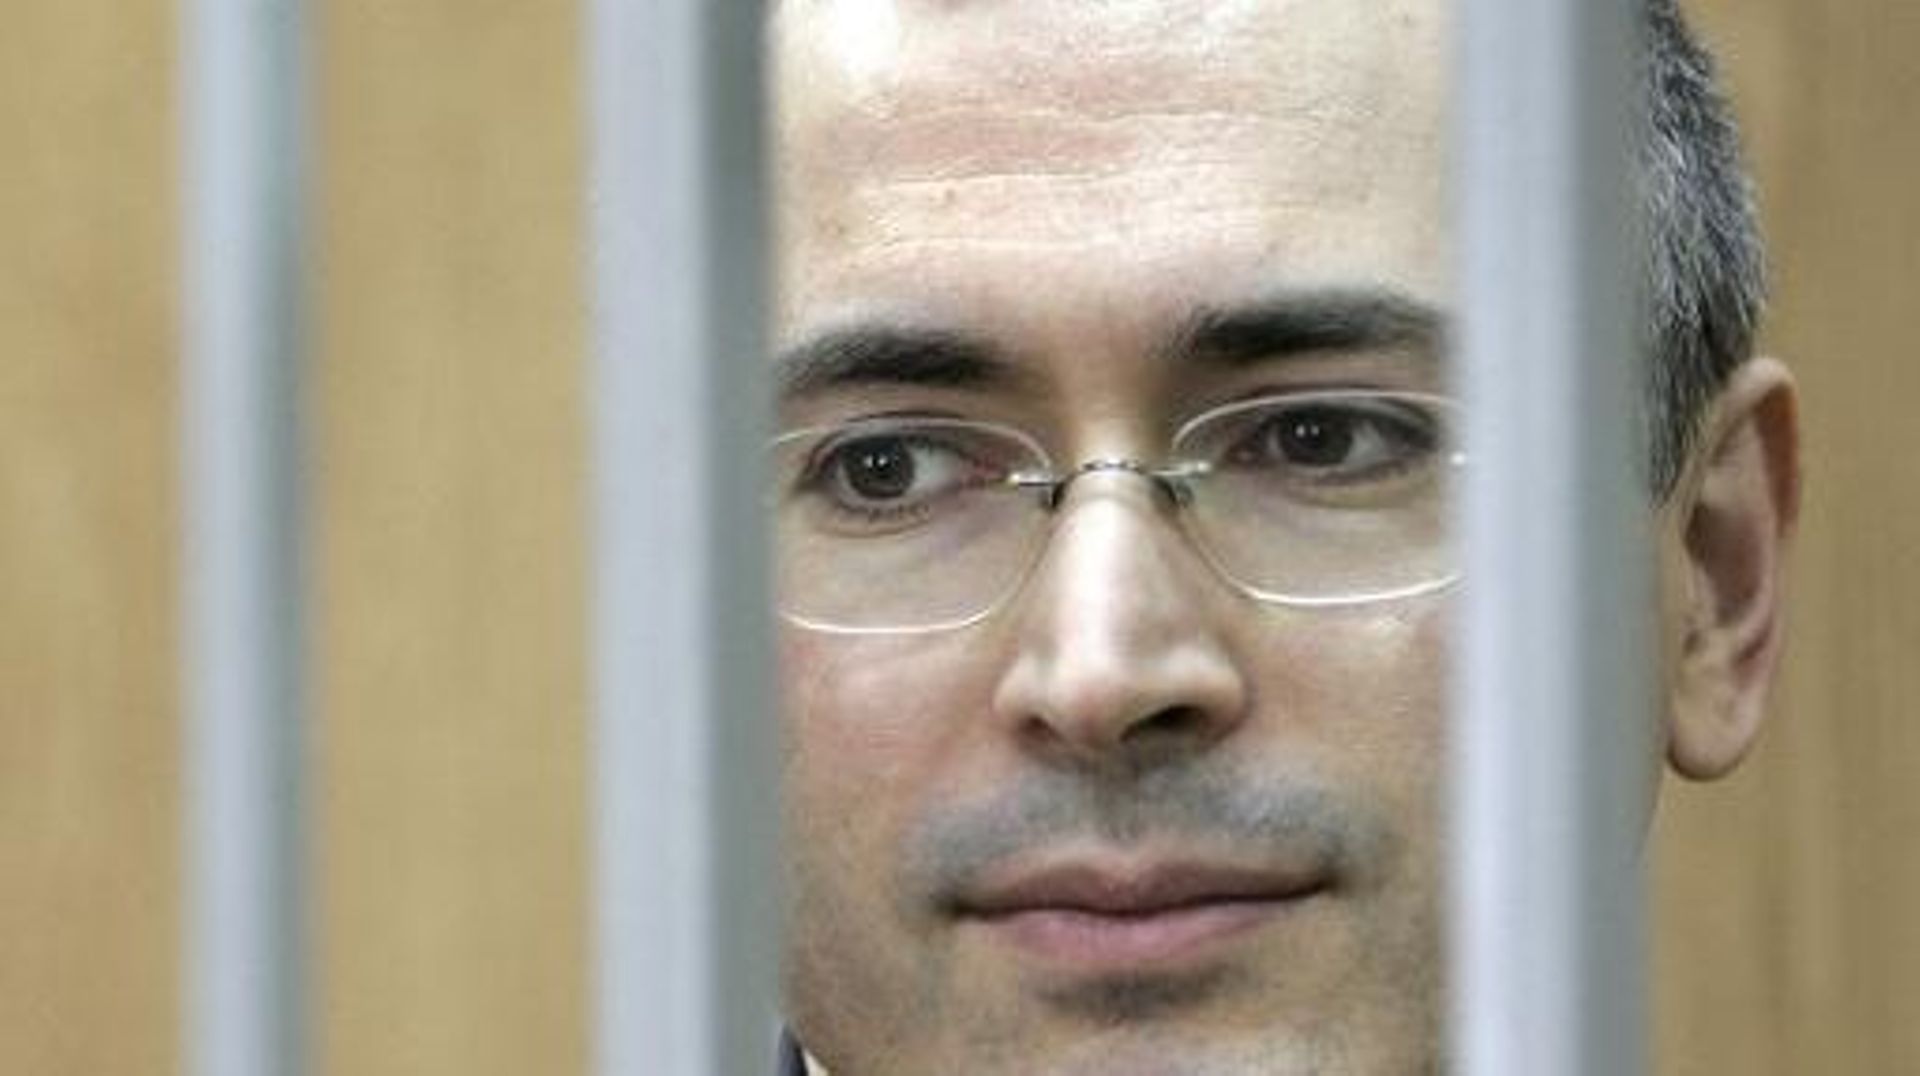 Photo prise le 30 mai 2005 montrant Mikhaïl Khodorkovski dans le box des accusés à Moscou